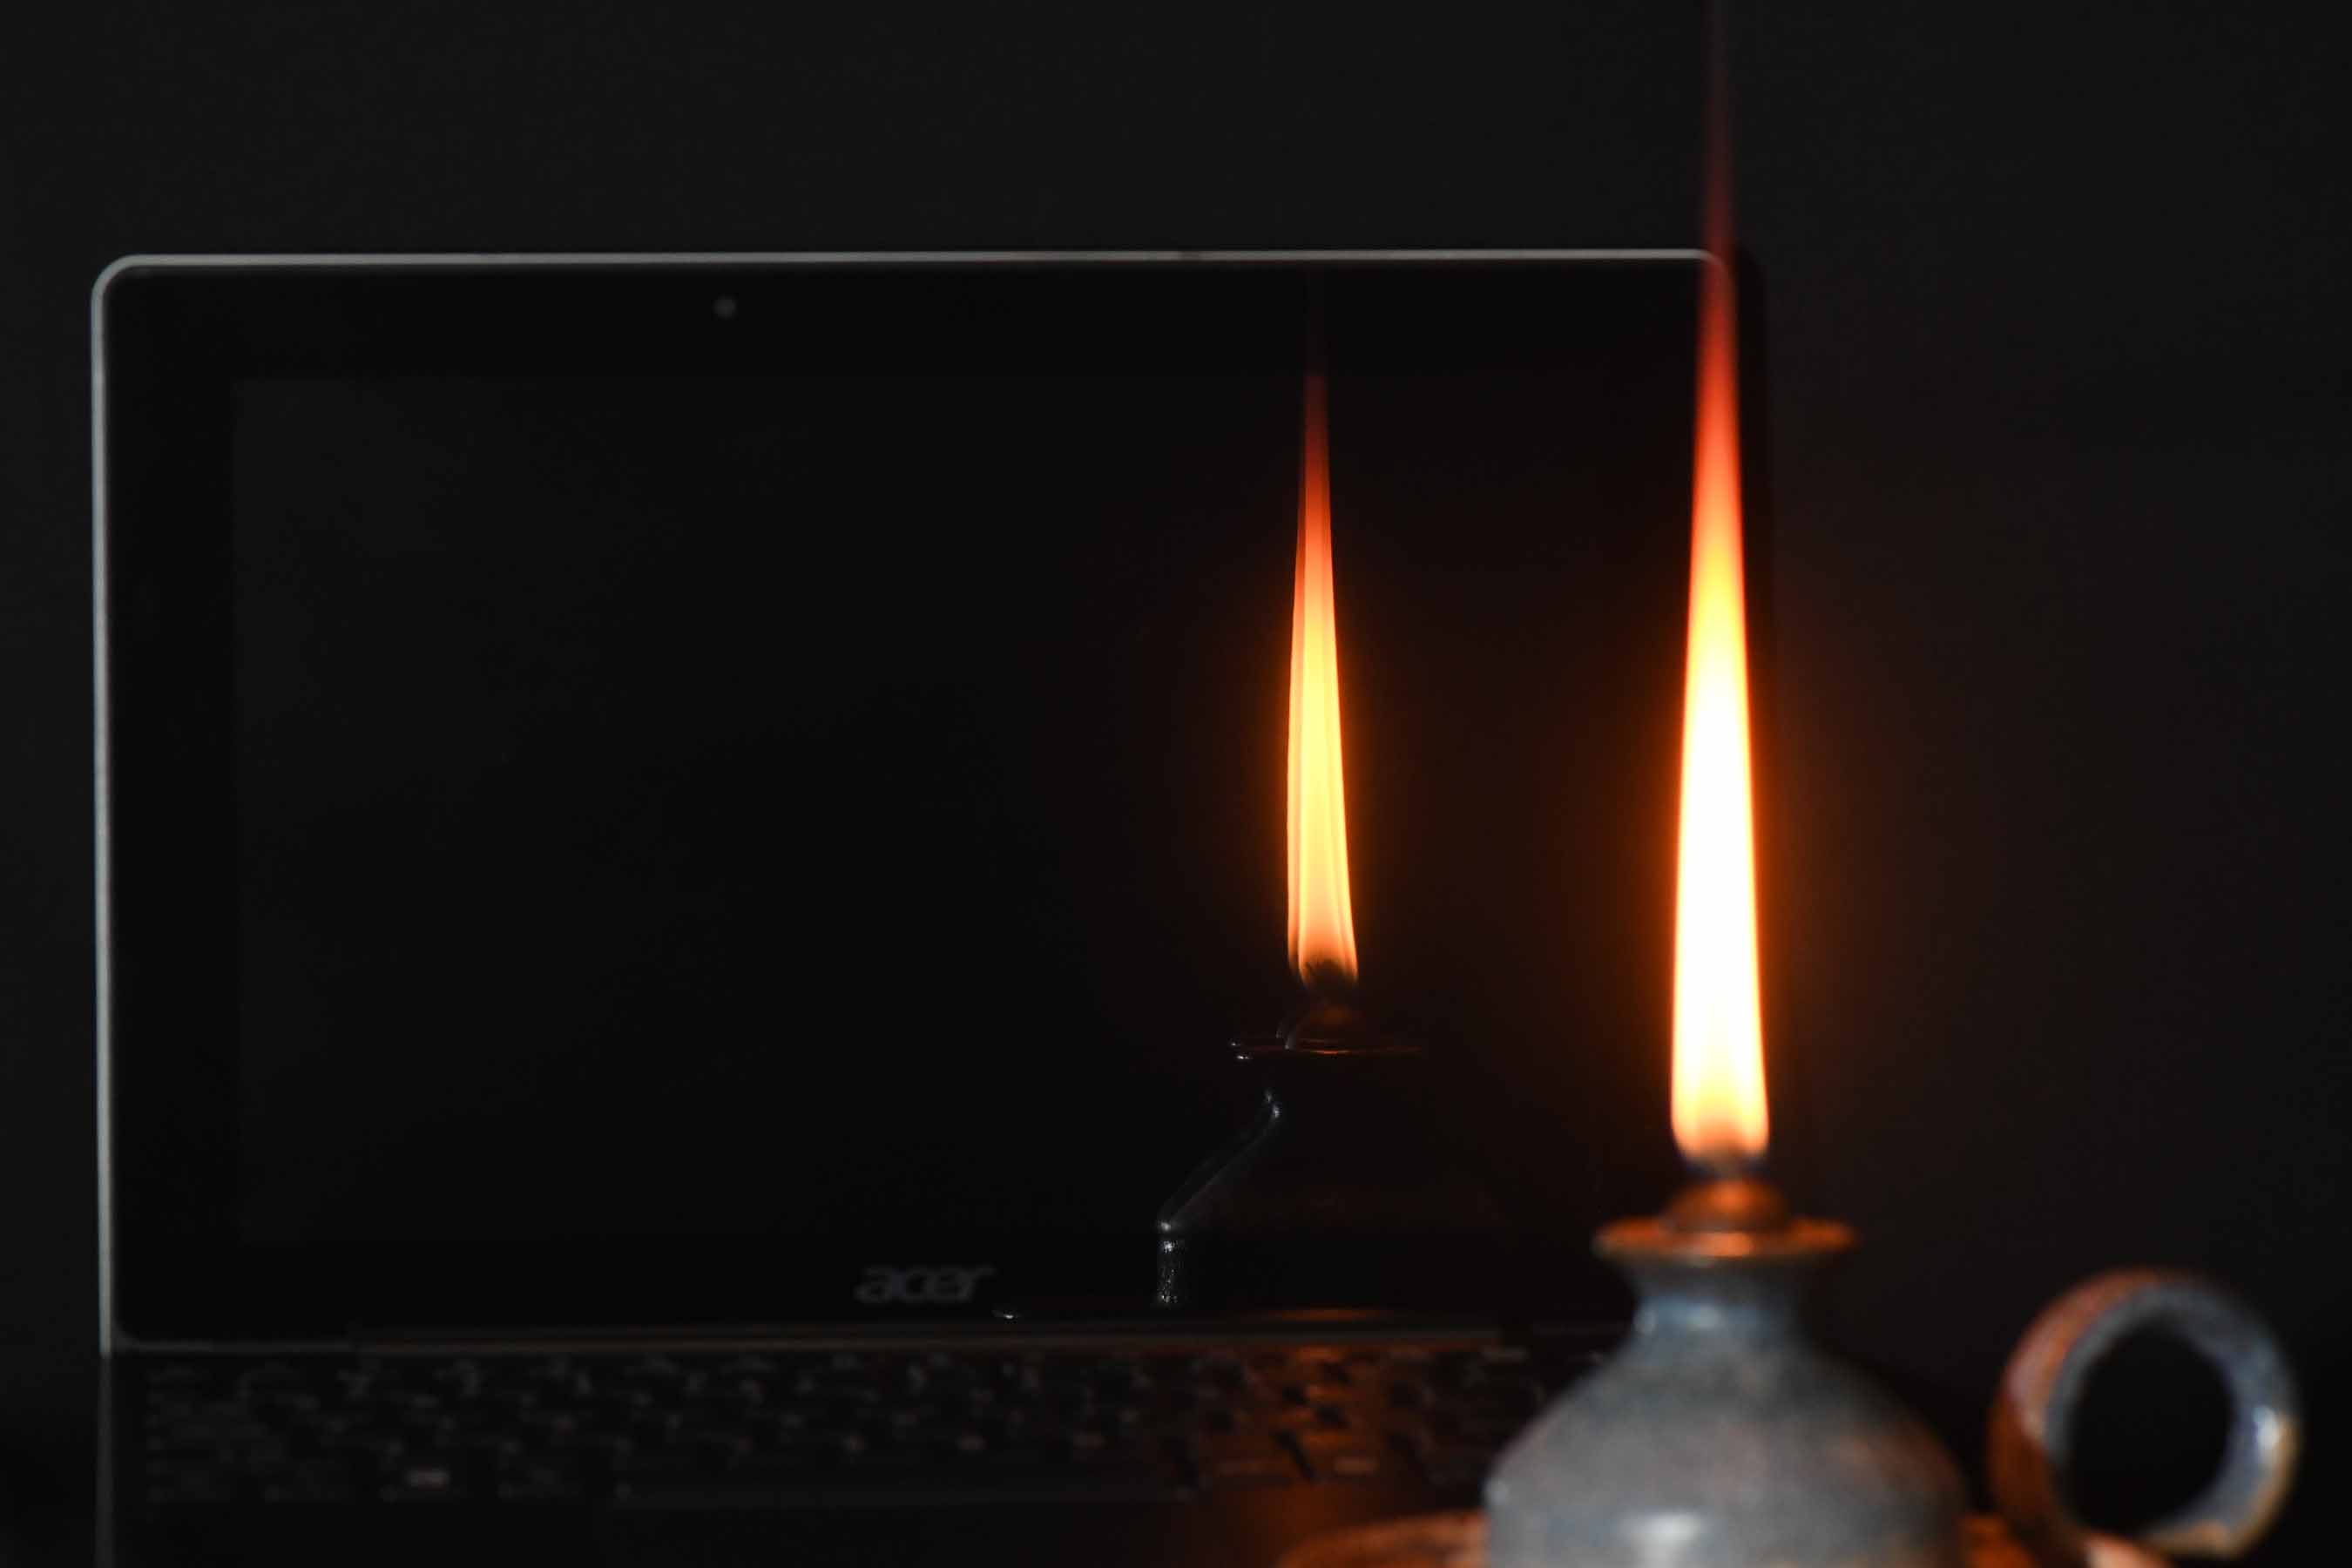 candle reflection resized.jpg